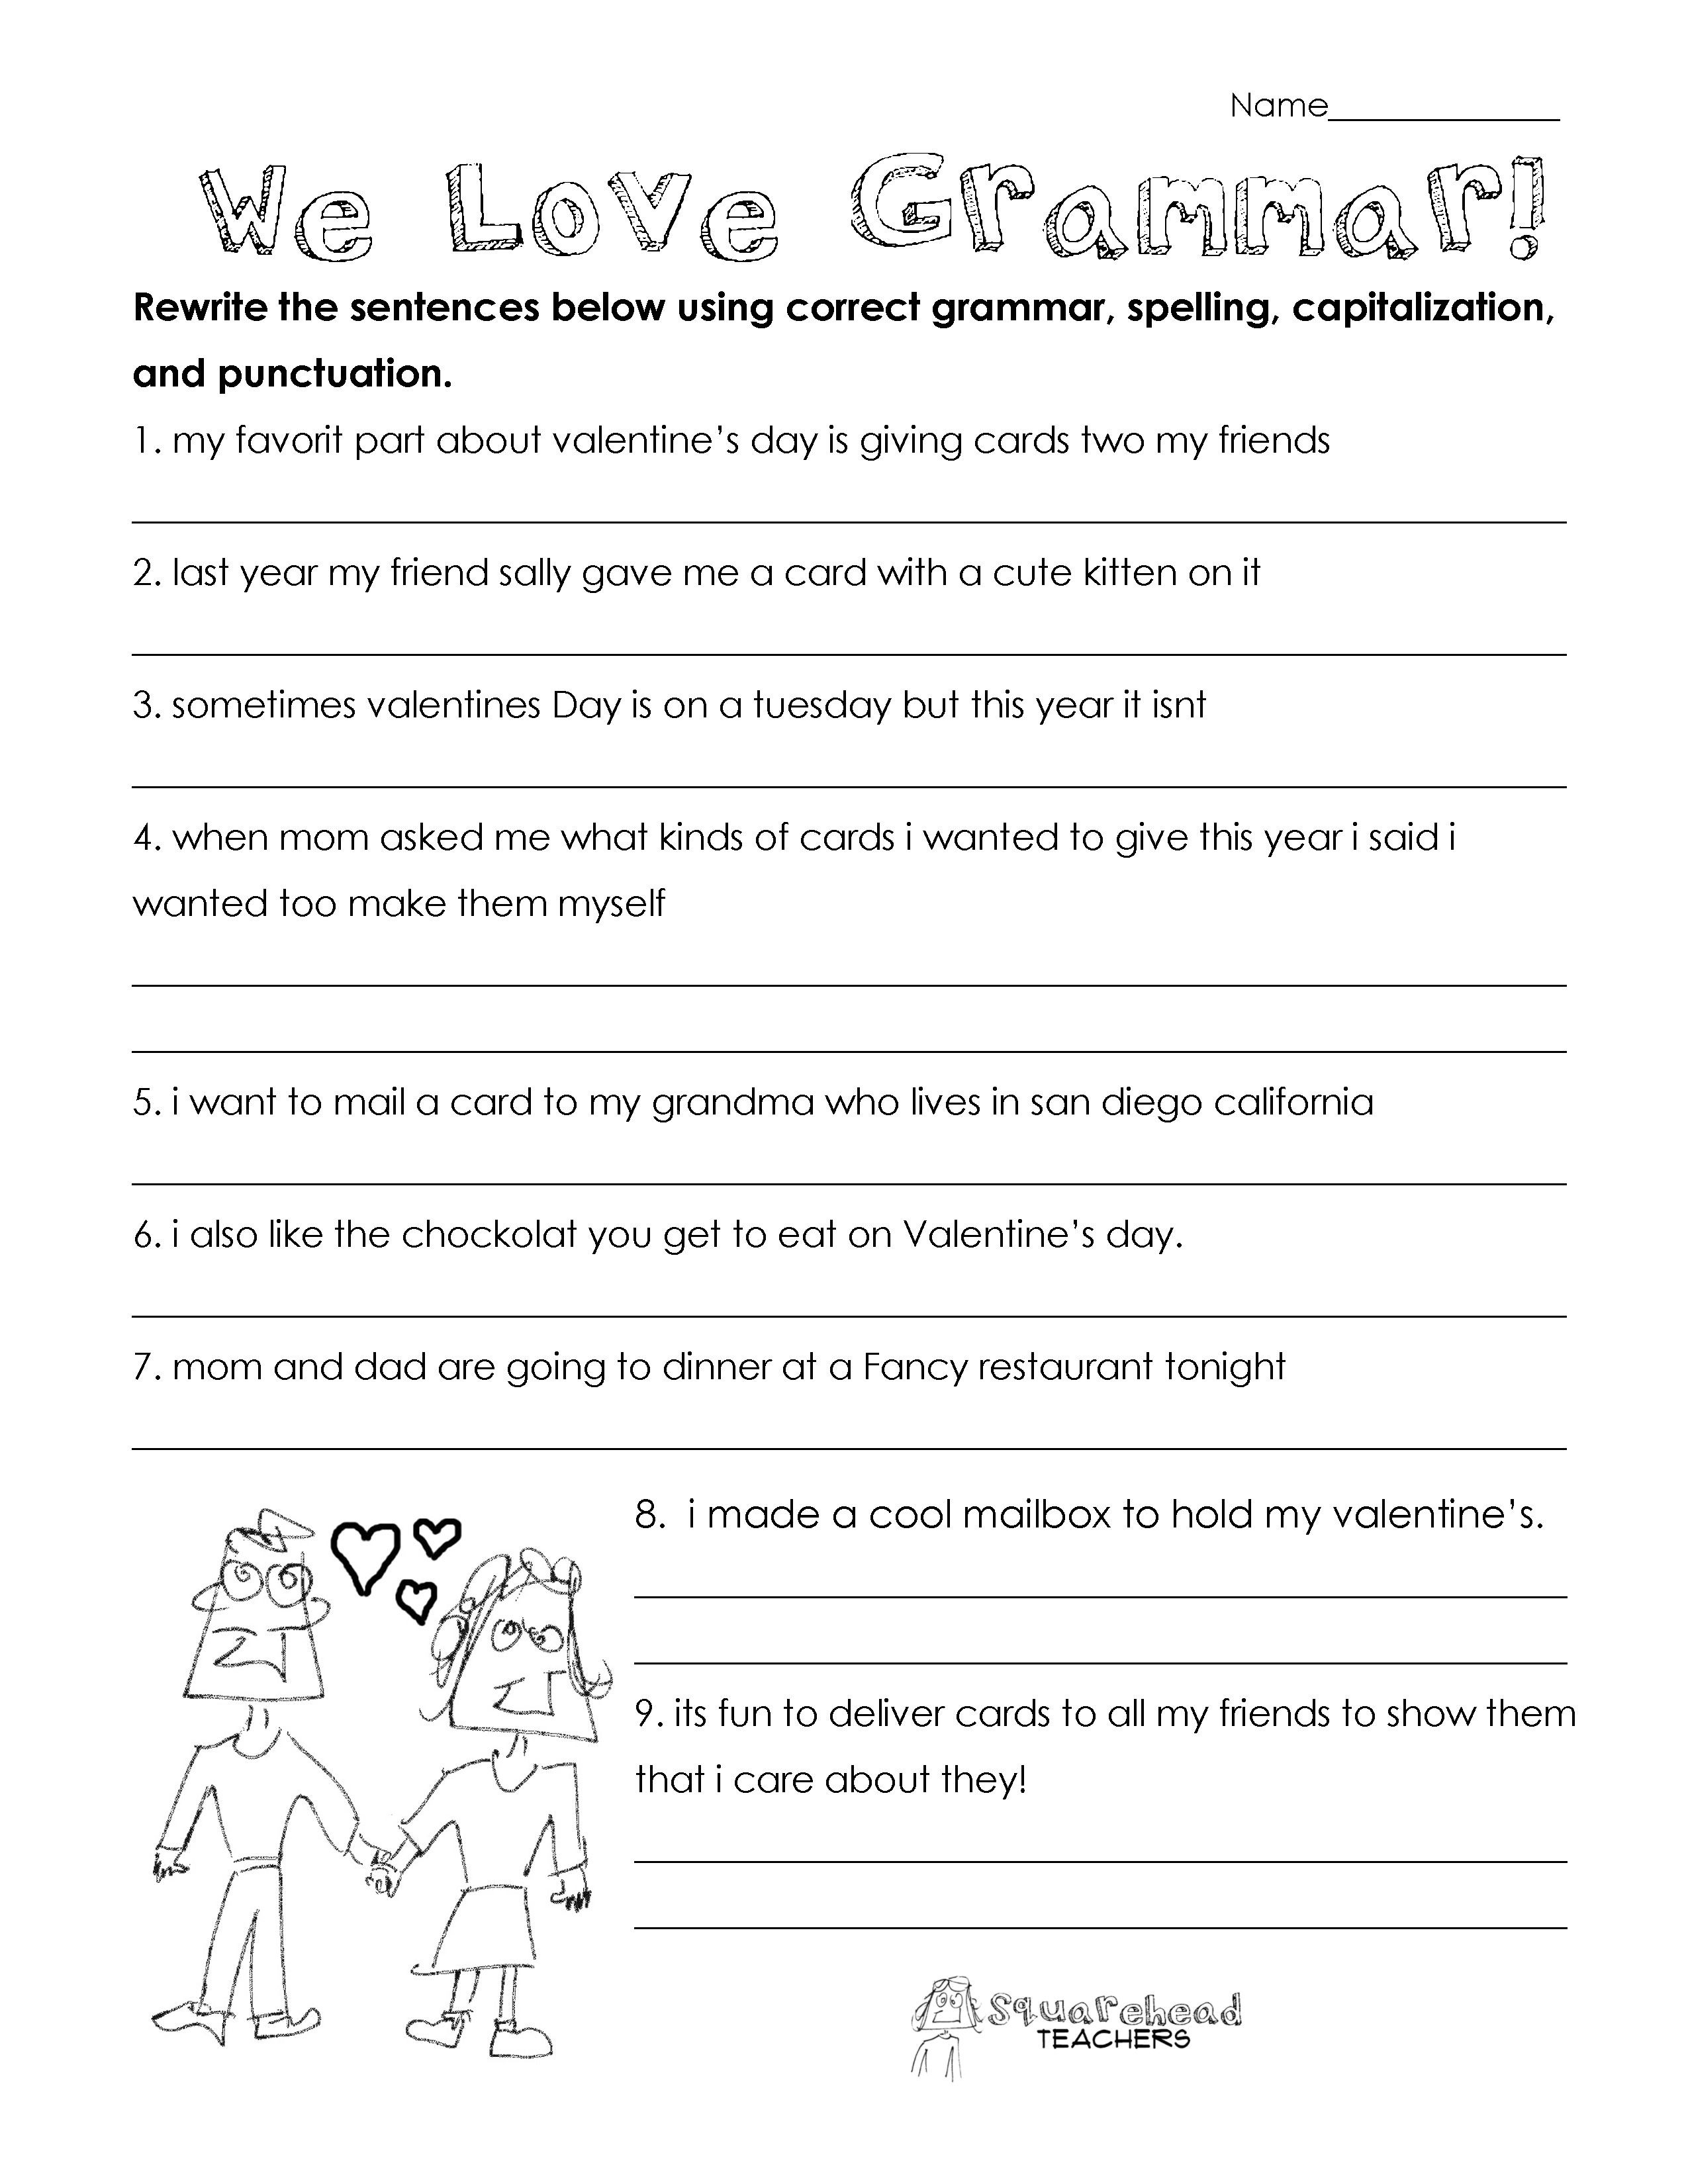 Grammar 3rd Grade Worksheets Valentine S Day Grammar Free Worksheet for 3rd Grade and Up